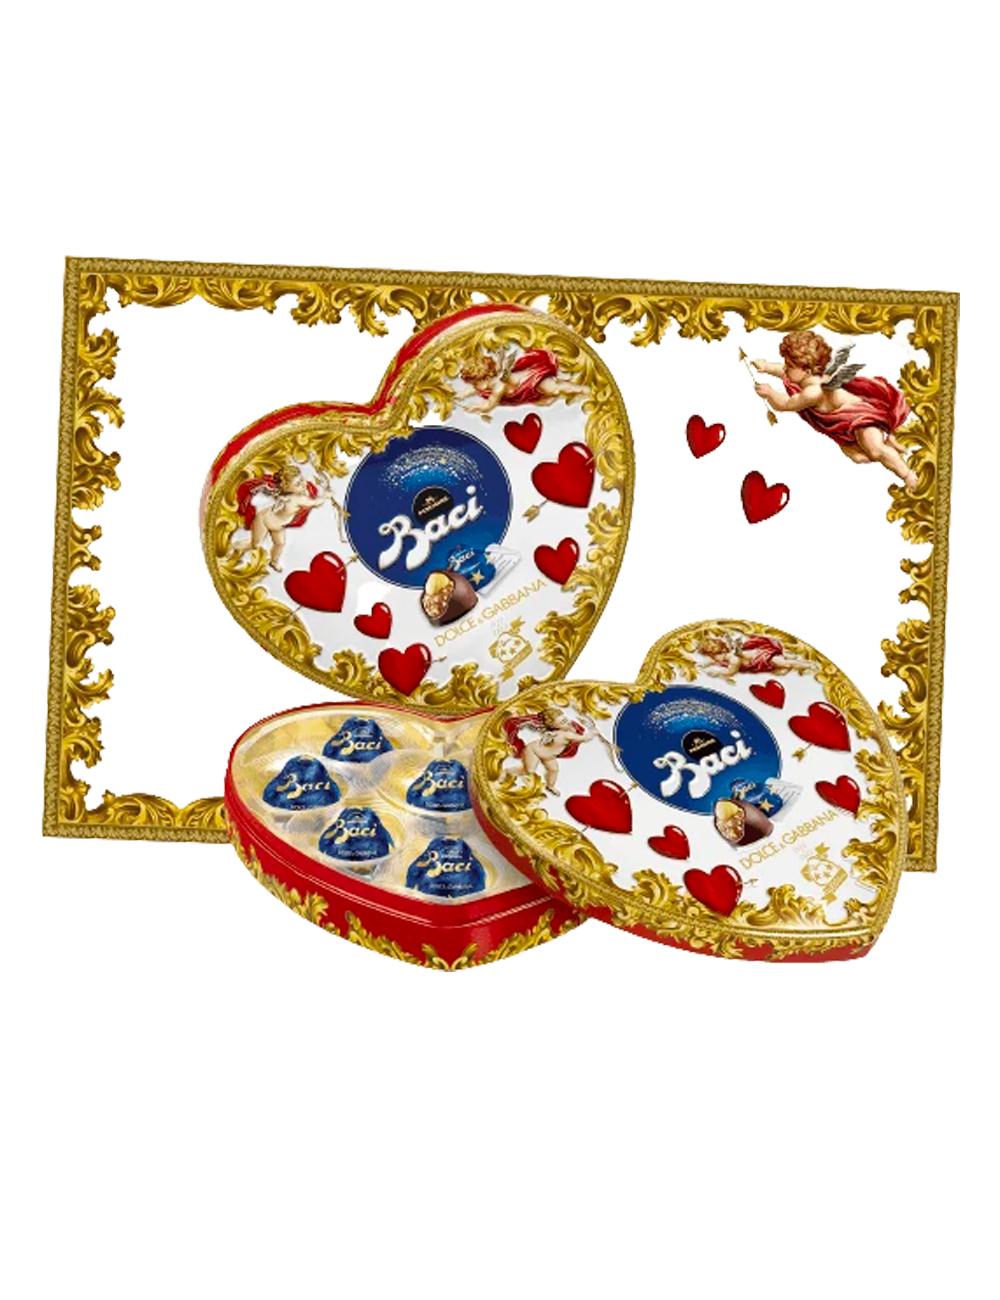 Baci Perugina Dolce & Gabbana heart tin 100 years Valentine's Day 100 g